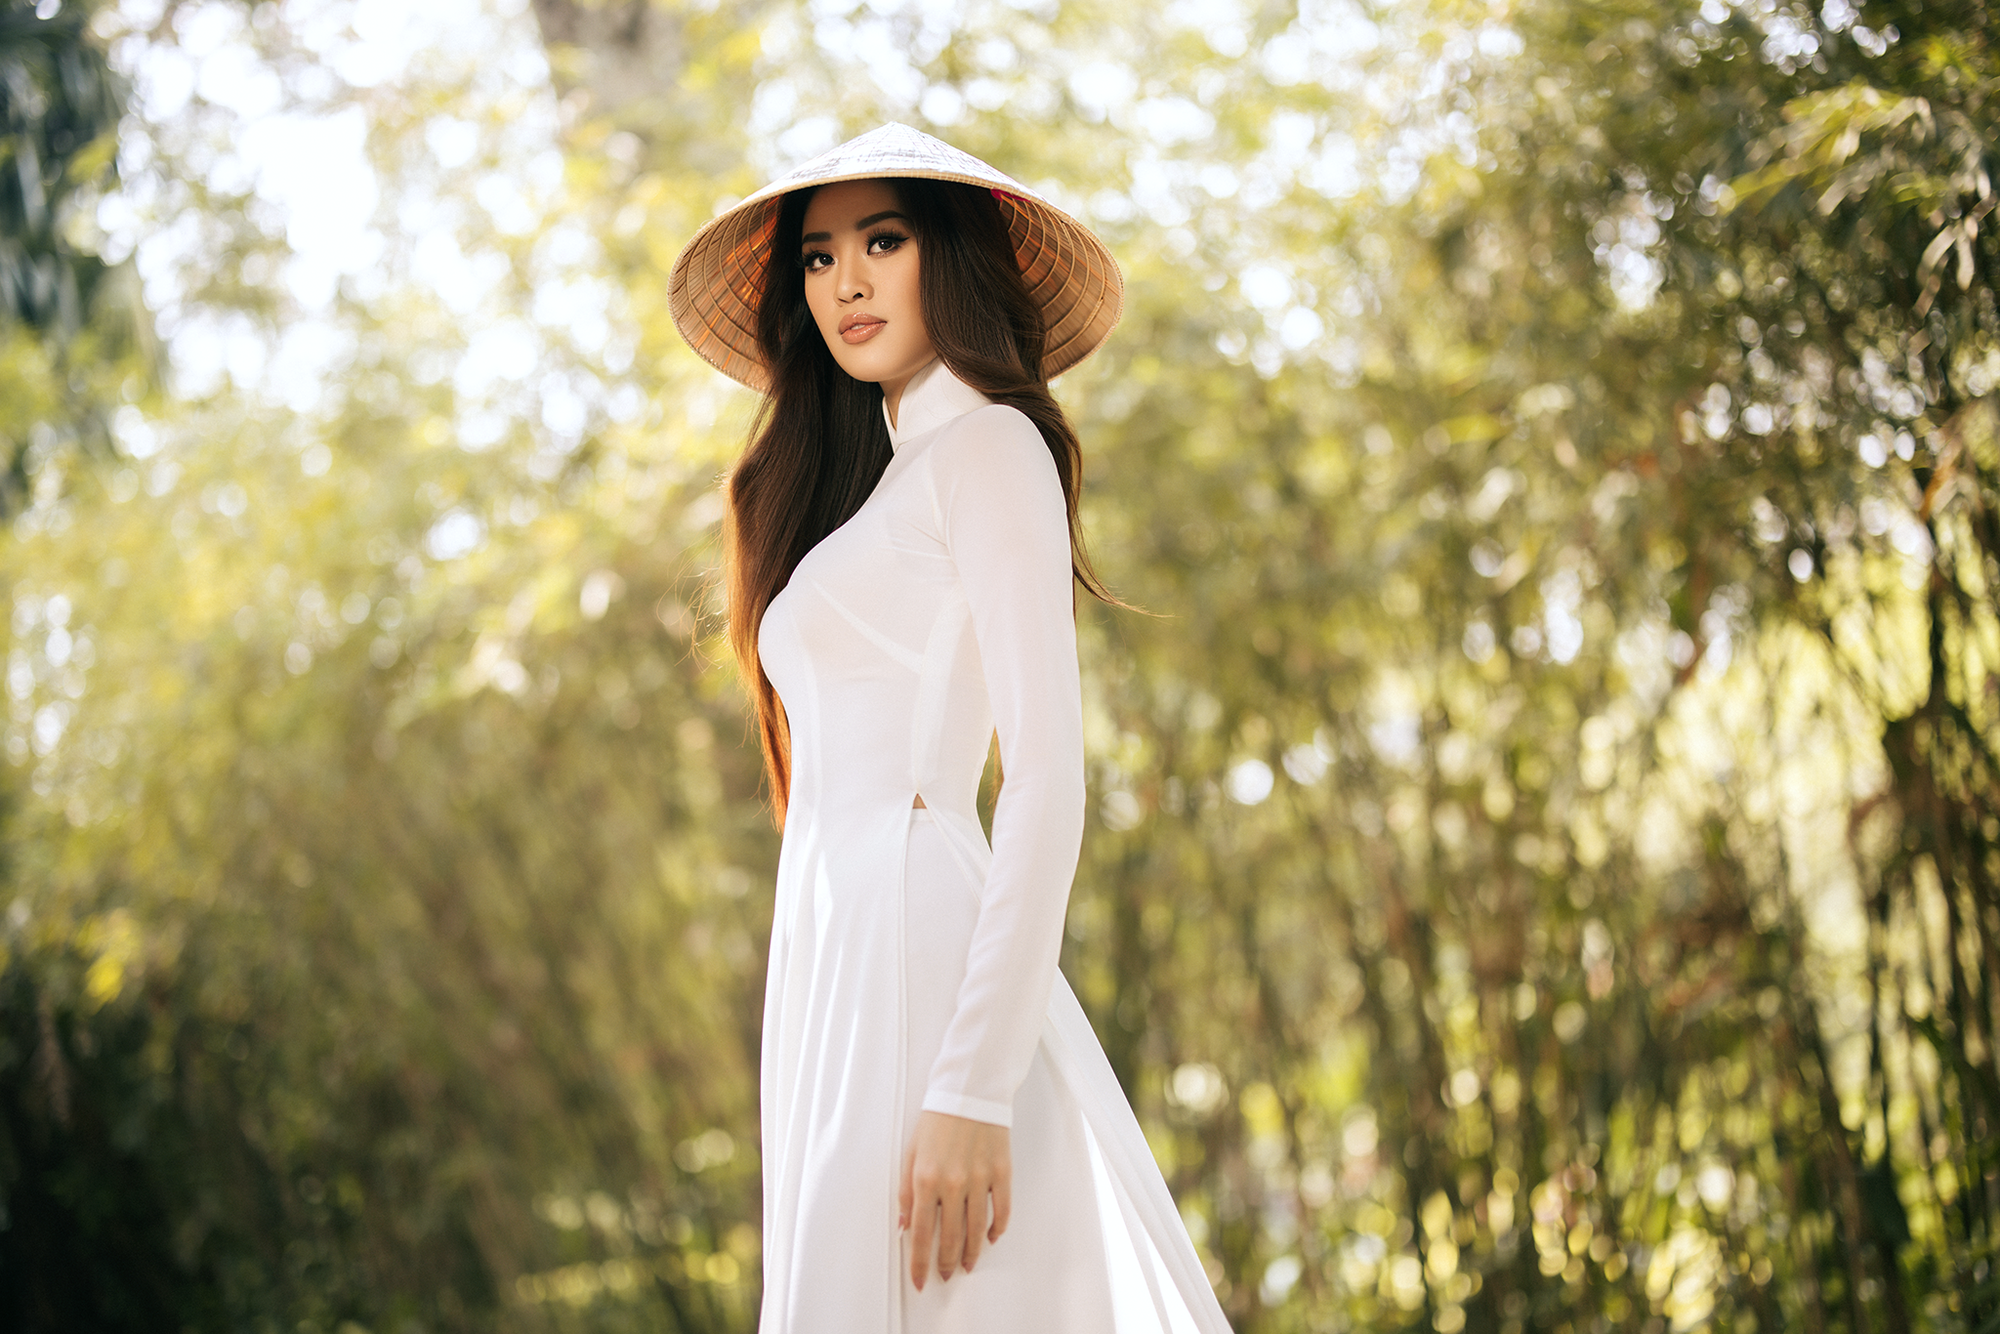 Hoa hậu Khánh Vân mặc áo dài trắng đẹp như mỹ nhân trong tranh - Ảnh 4.